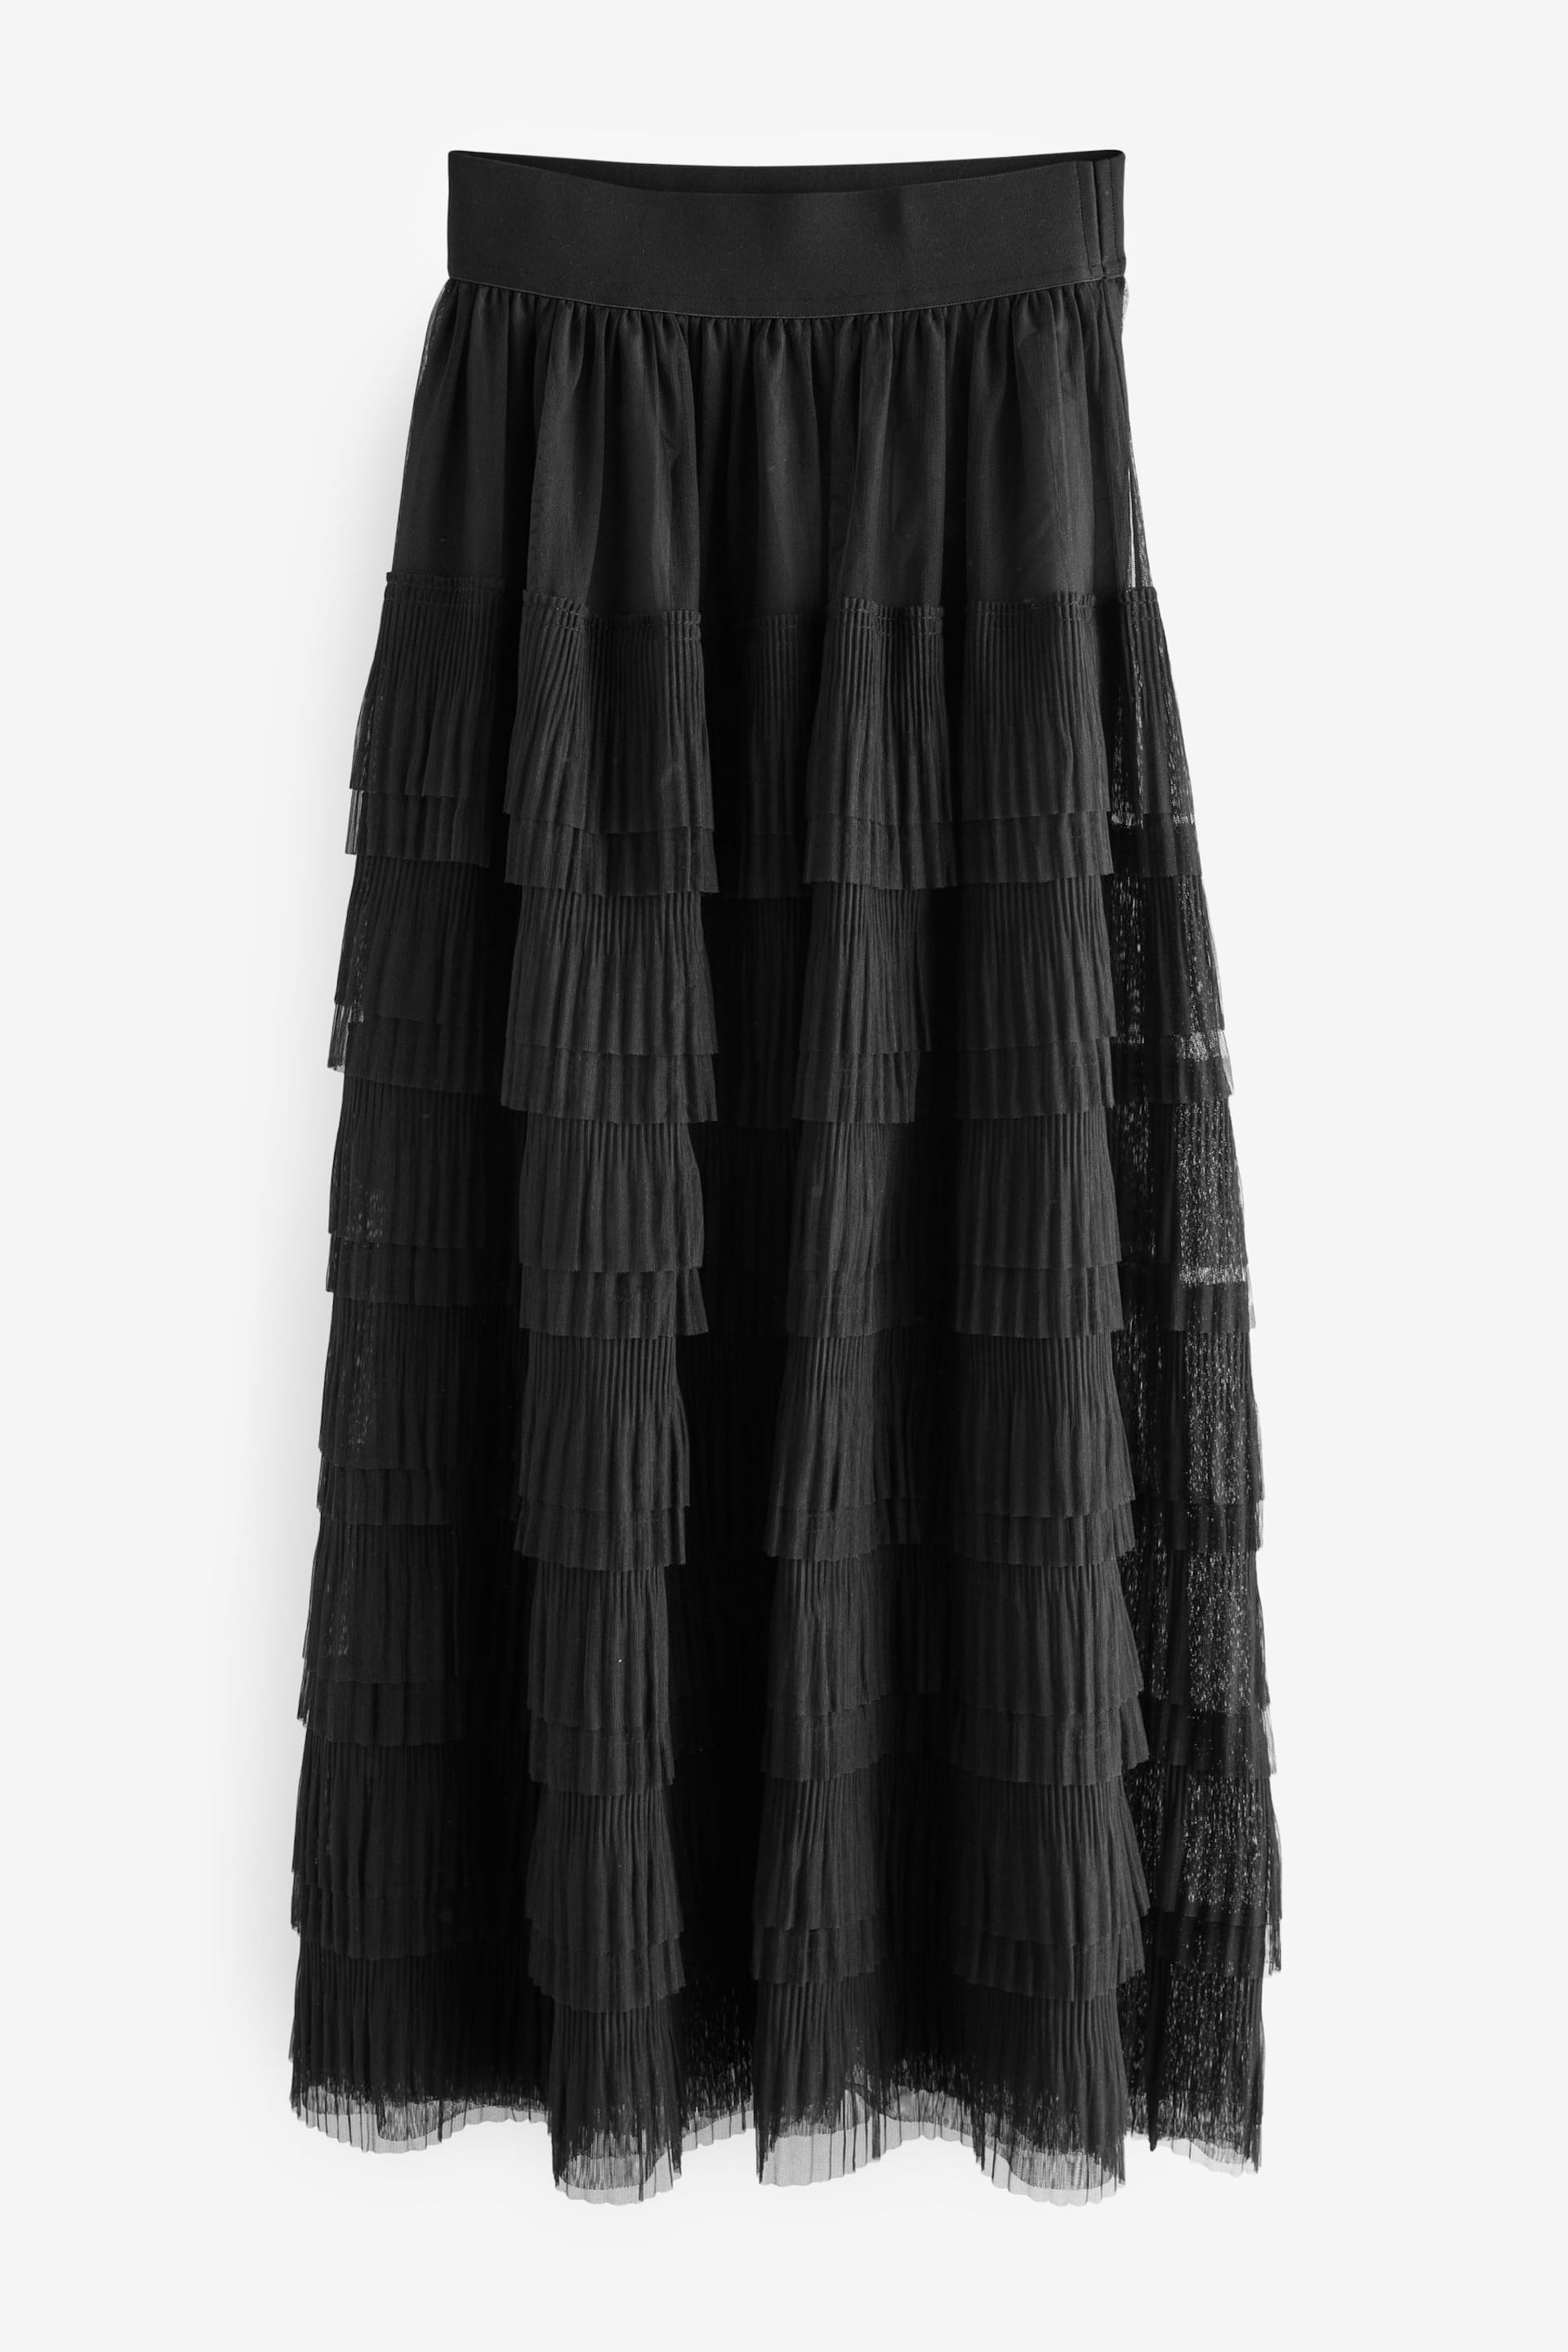 Black Mesh Tulle Midi Skirt - Image 6 of 7